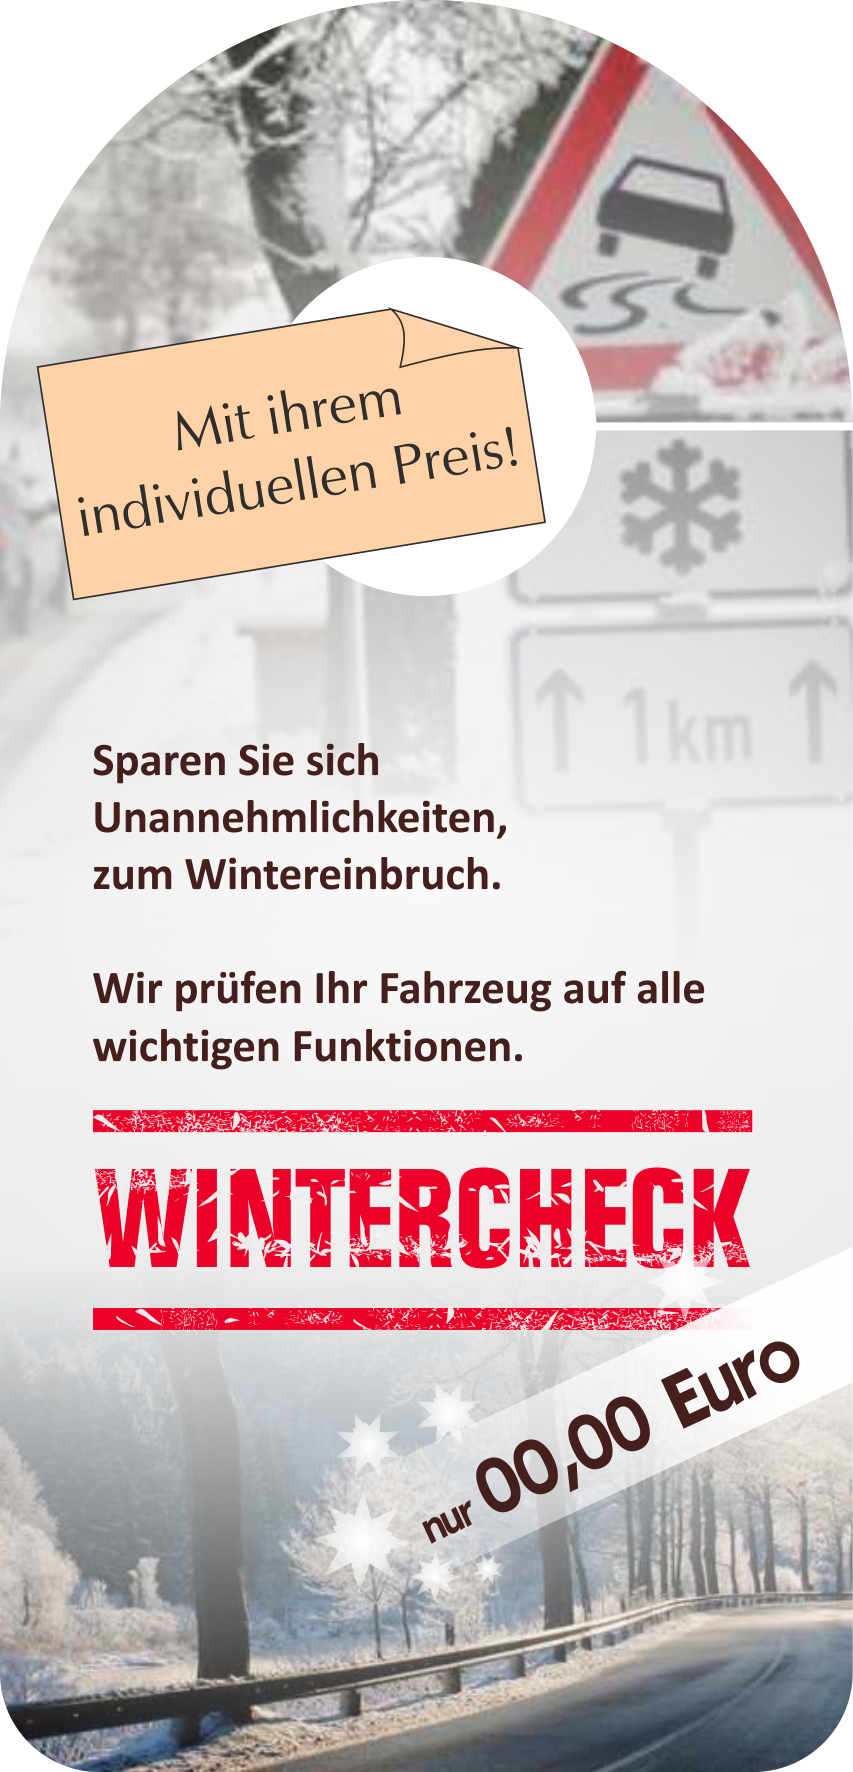 Spiegelanhänger "Wintercheck mit Preis"